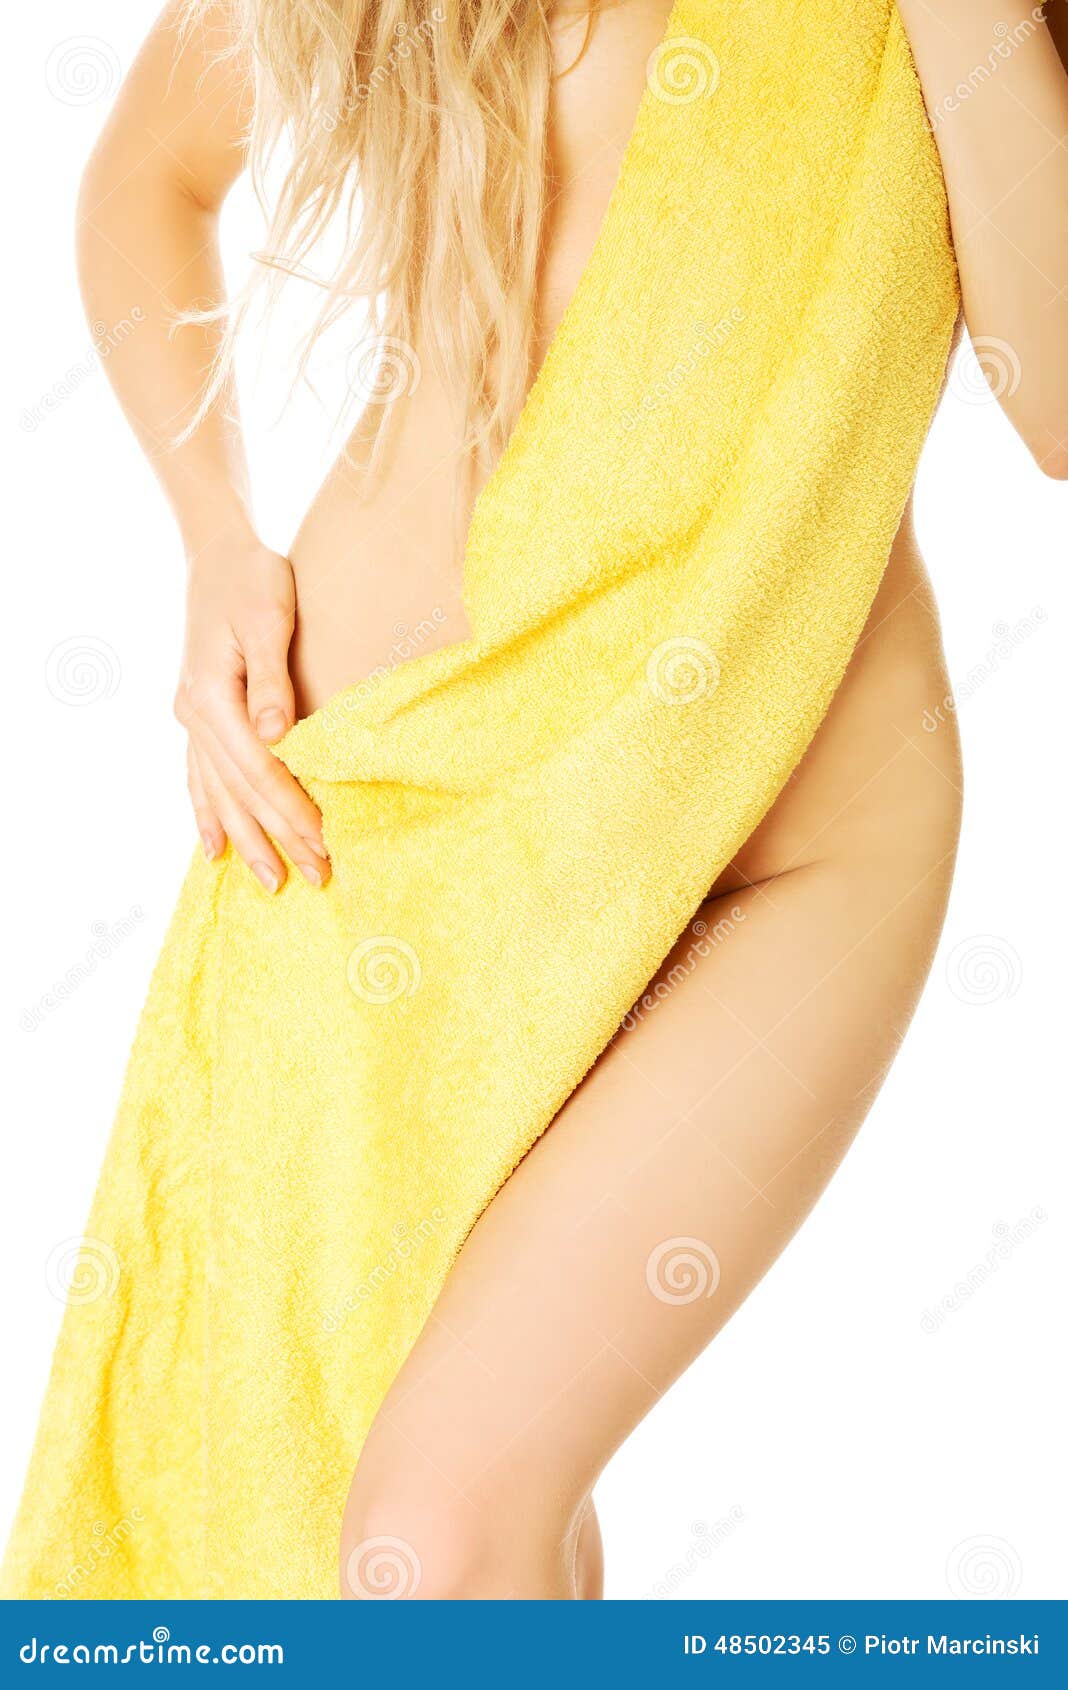 Прикрылась полотенцем. Девушка завернутая в полотенце. Женщина в одном полотенце. Женское тело в полотенце. Девушка замотанная в полотенце.